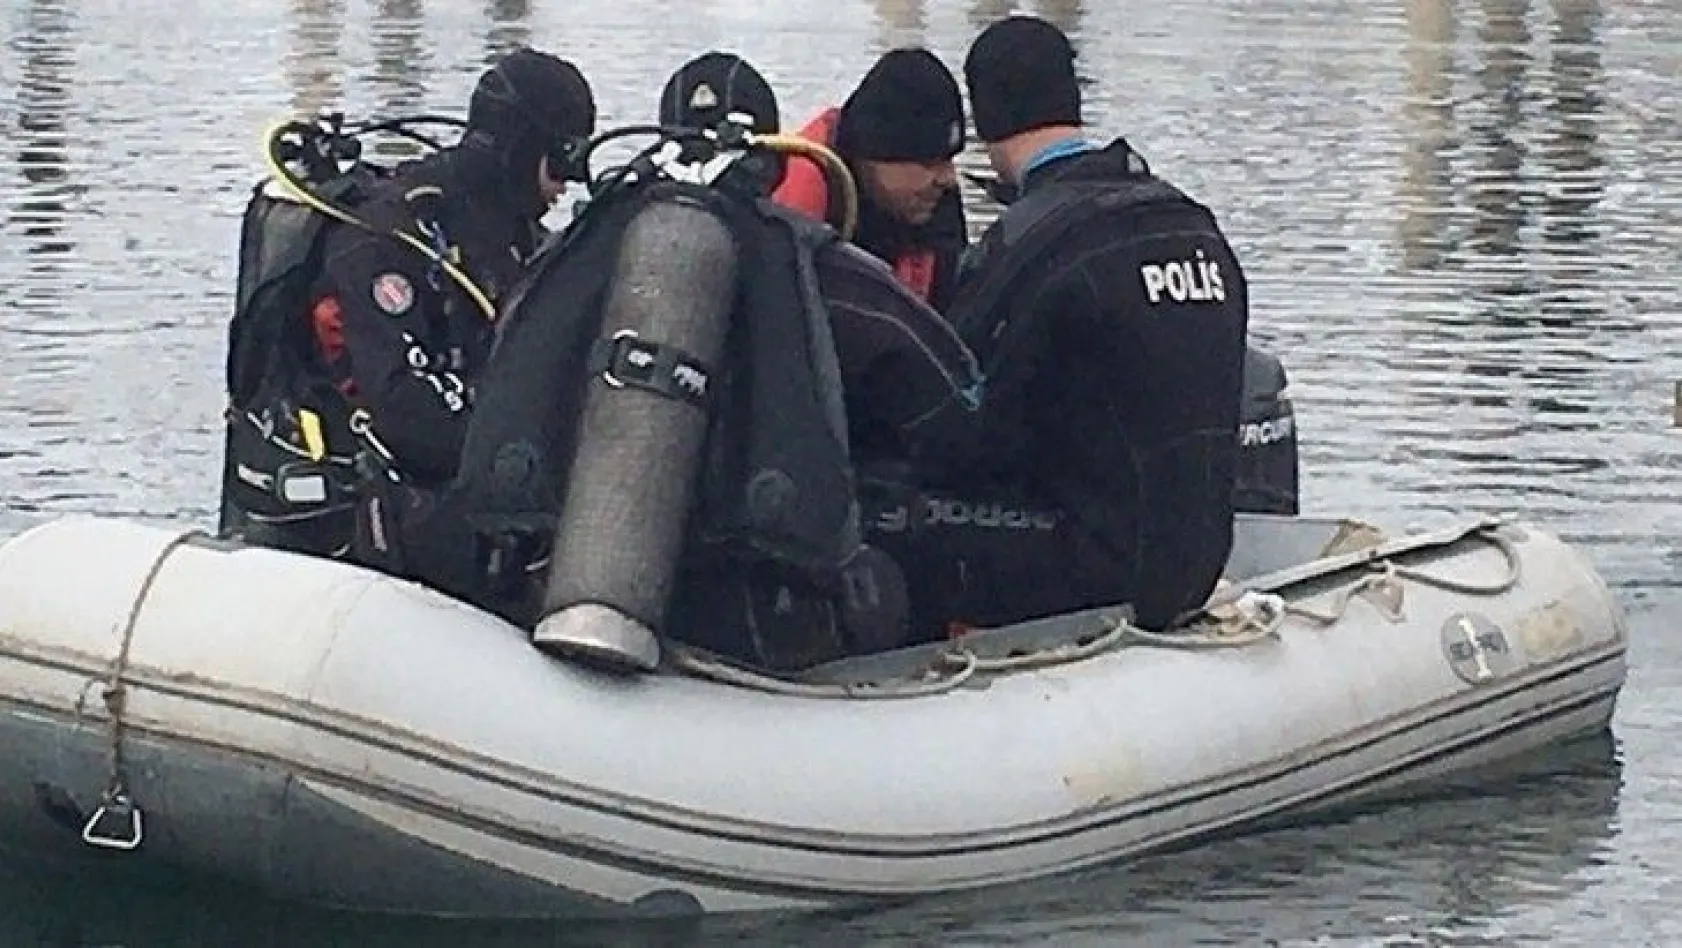 Batan teknede kaybolan şahsın cansız bedenine ulaşıldı